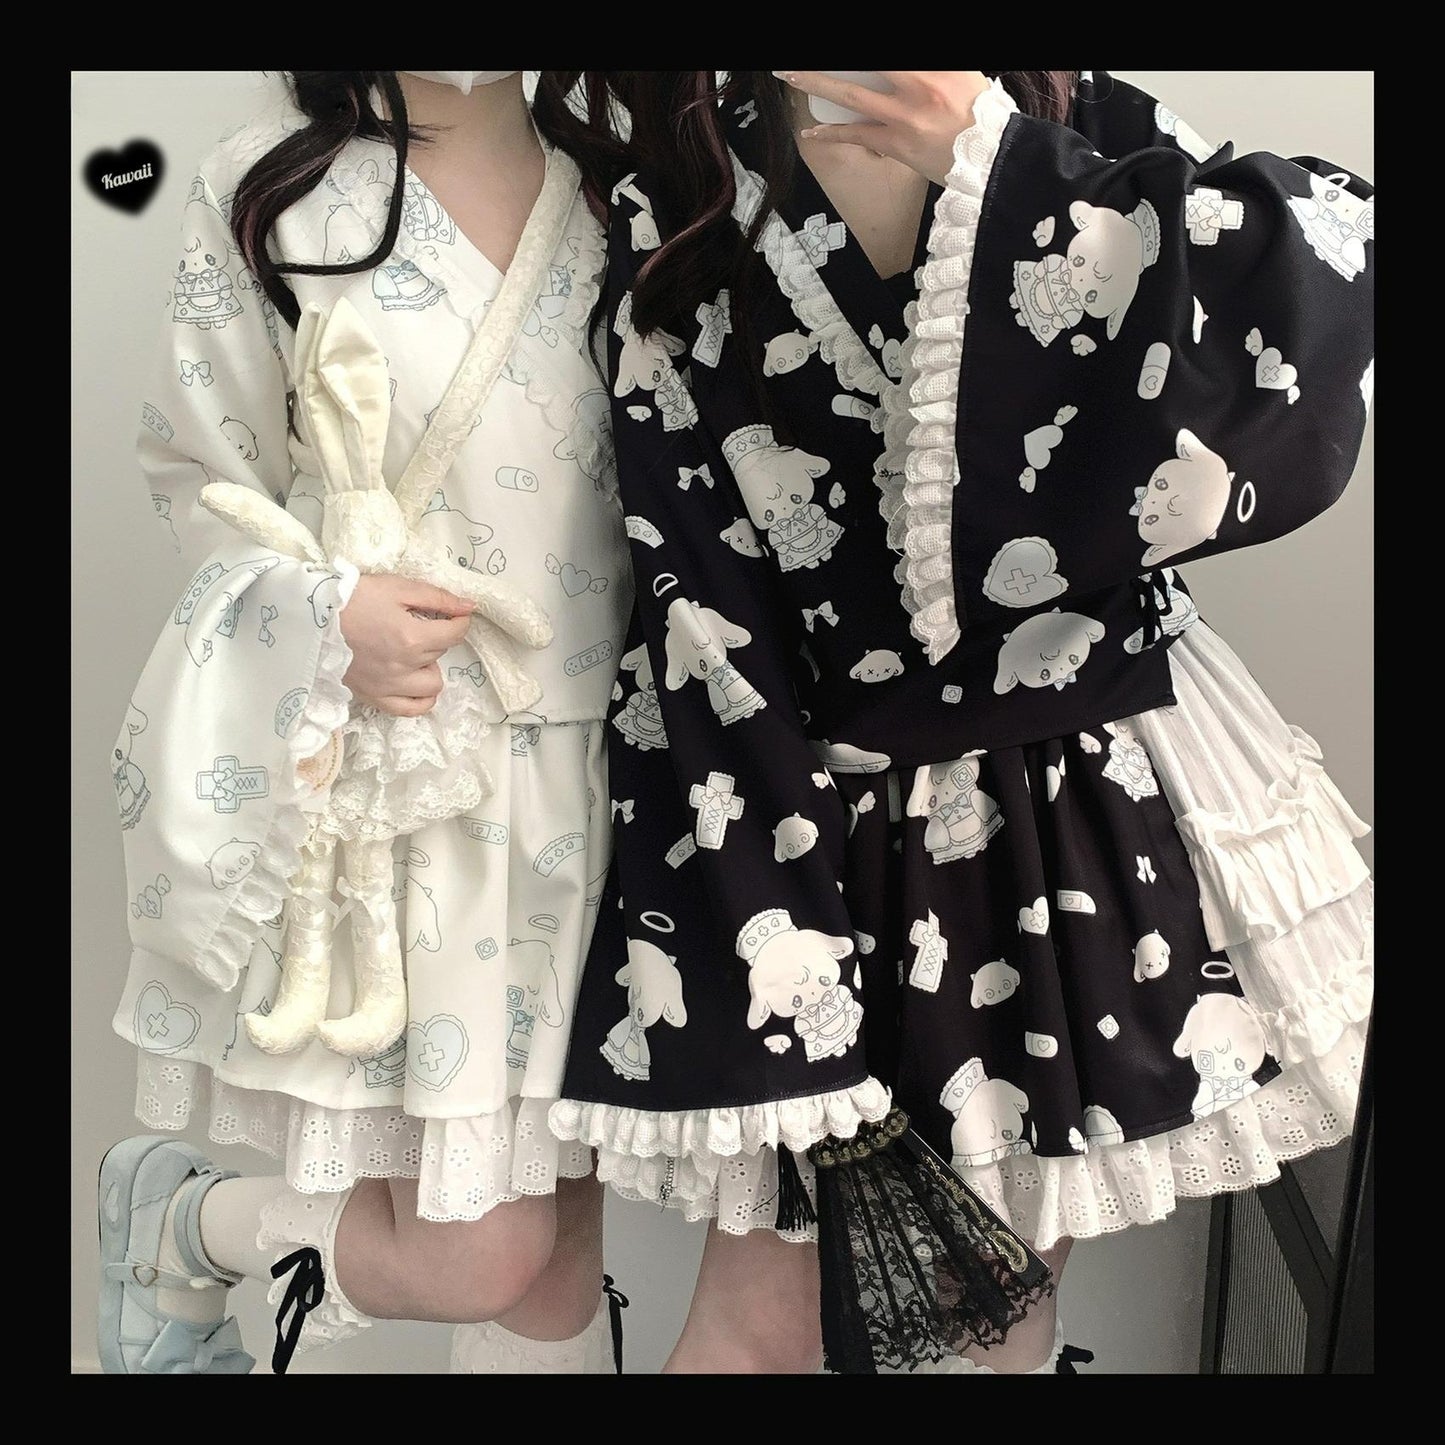 Tenshi Kaiwai Patchwork Skirt Kimono Top White Apron Three-Piece Set 36786:536958